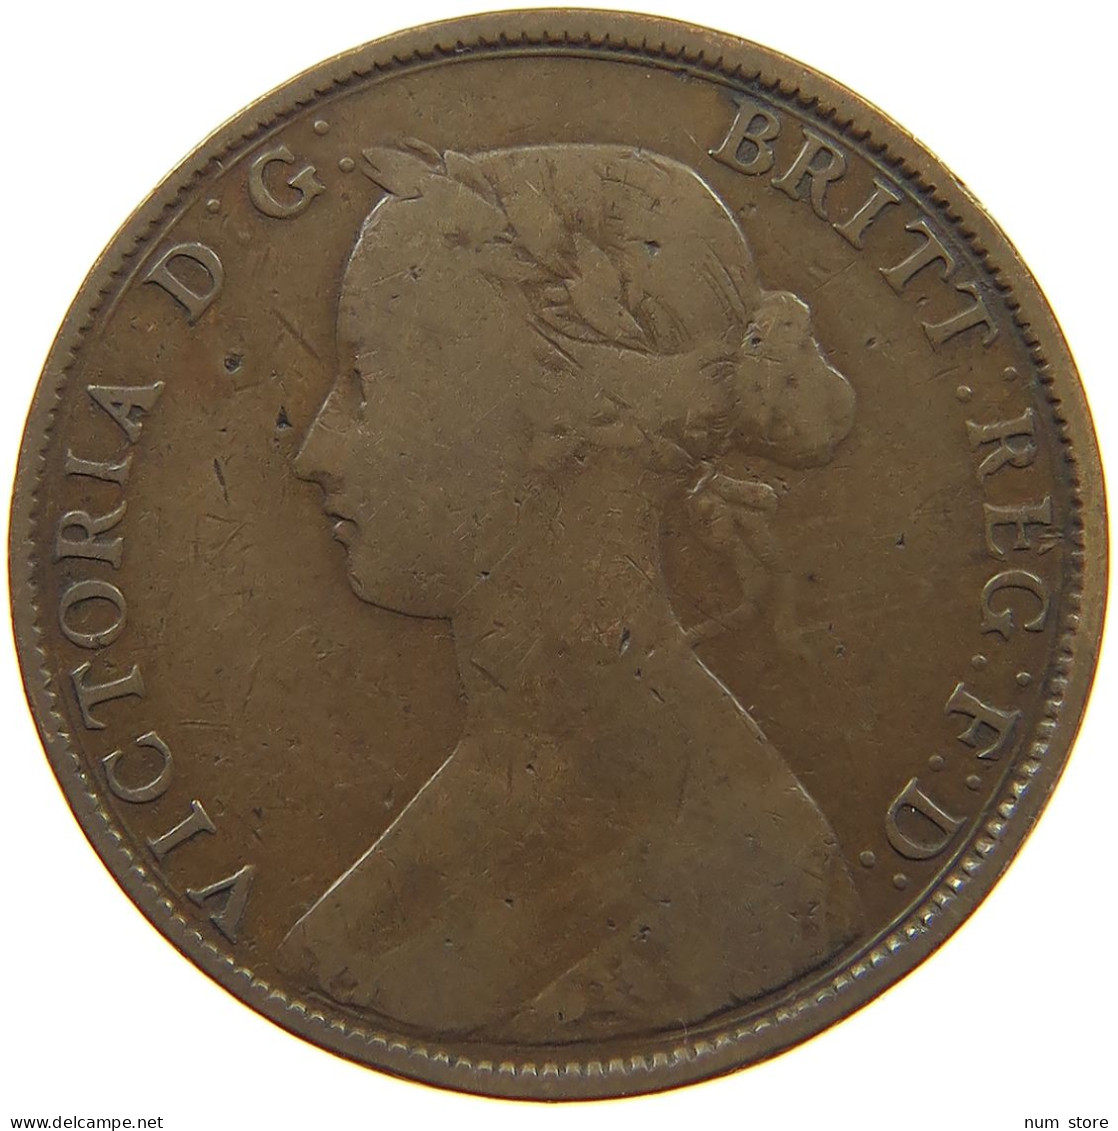 GREAT BRITAIN HALFPENNY 1861 Victoria 1837-1901 #c032 0551 - C. 1/2 Penny